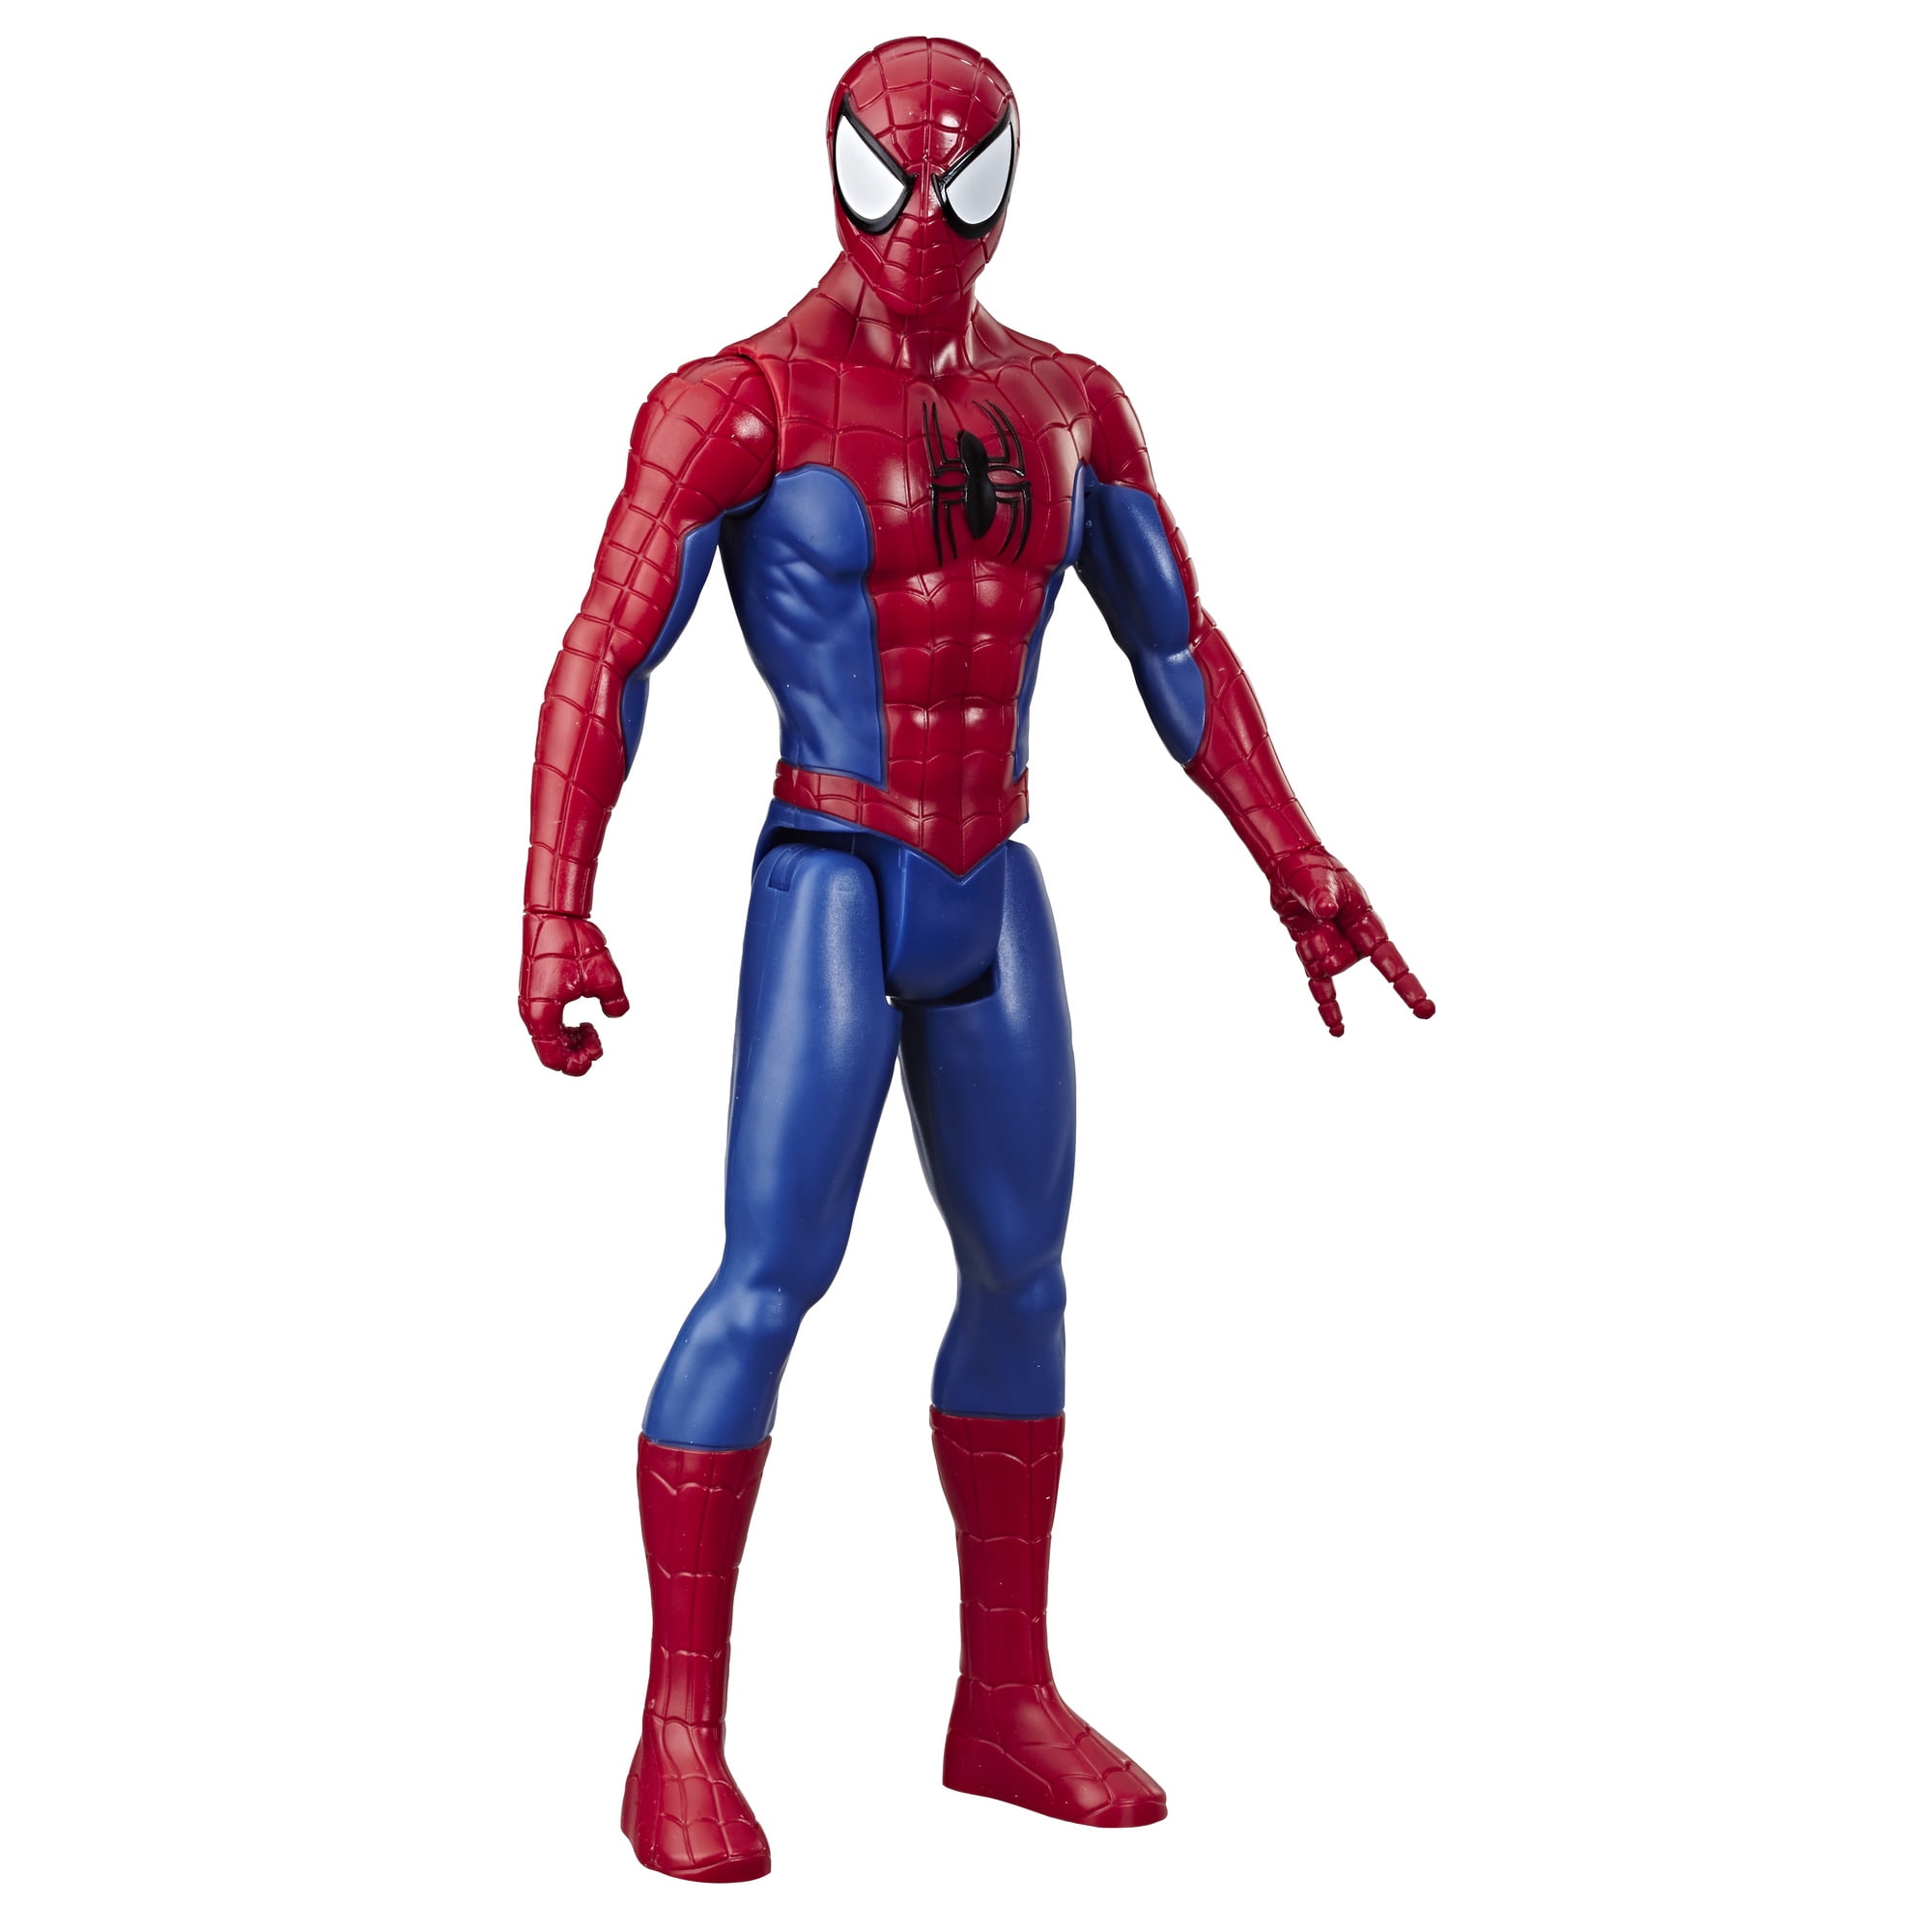 12" Marvel Action Figure Universe Avengers Action Figure 30CM Super Hero PVC Toy 